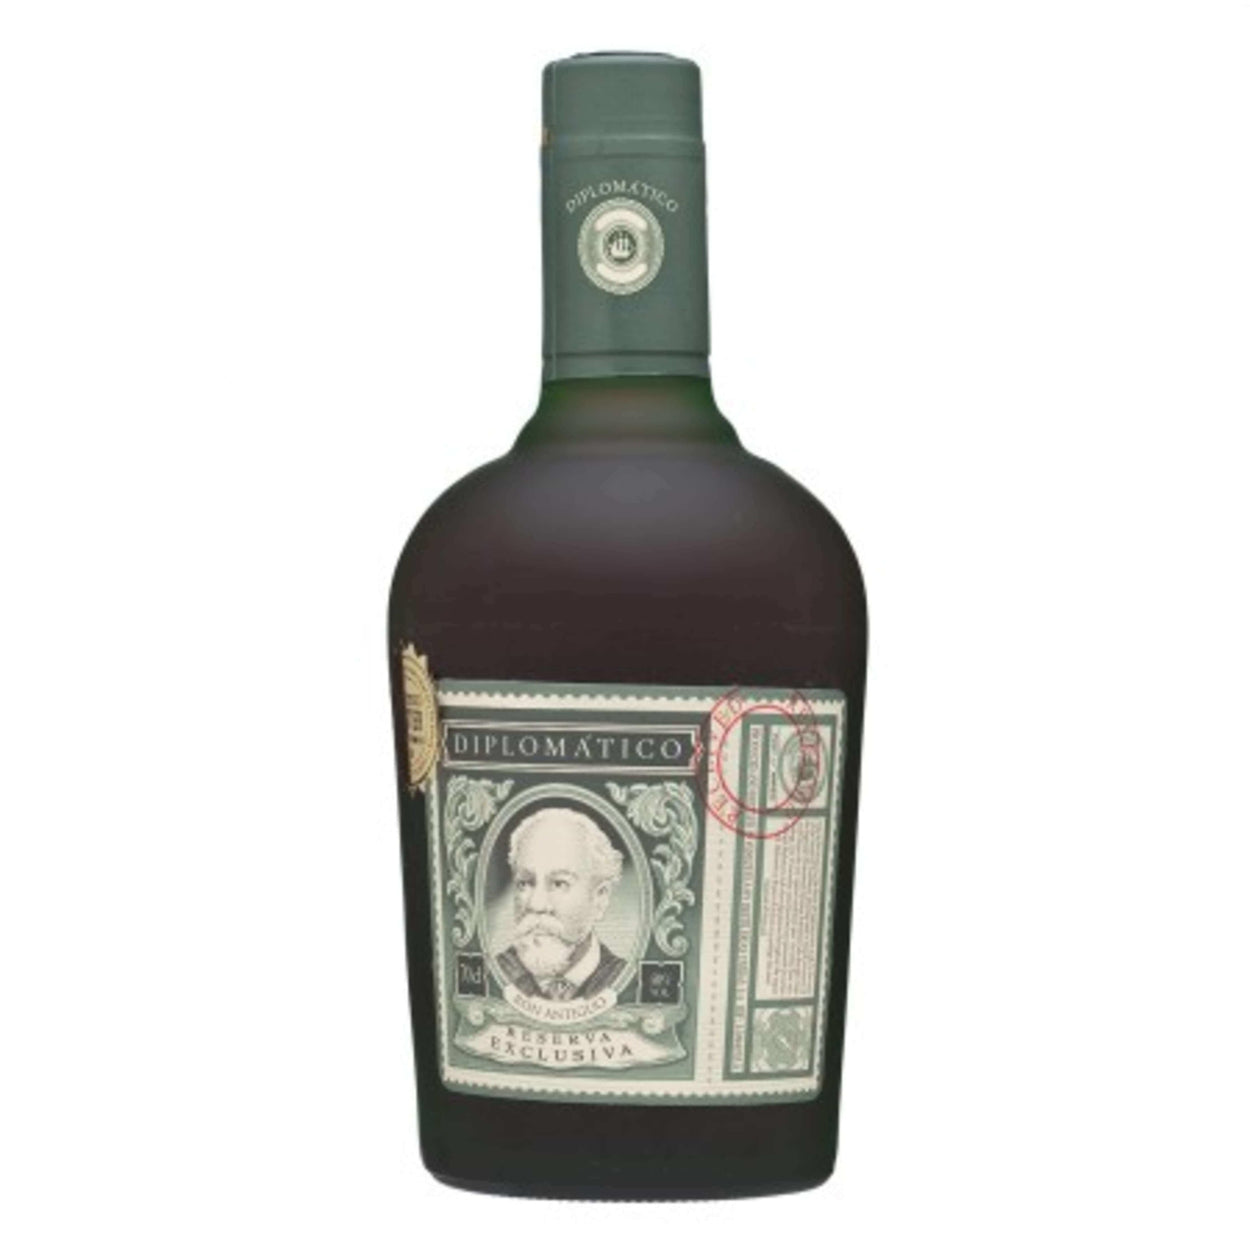 Buy Diplomatico Reserva Exclusiva Rum